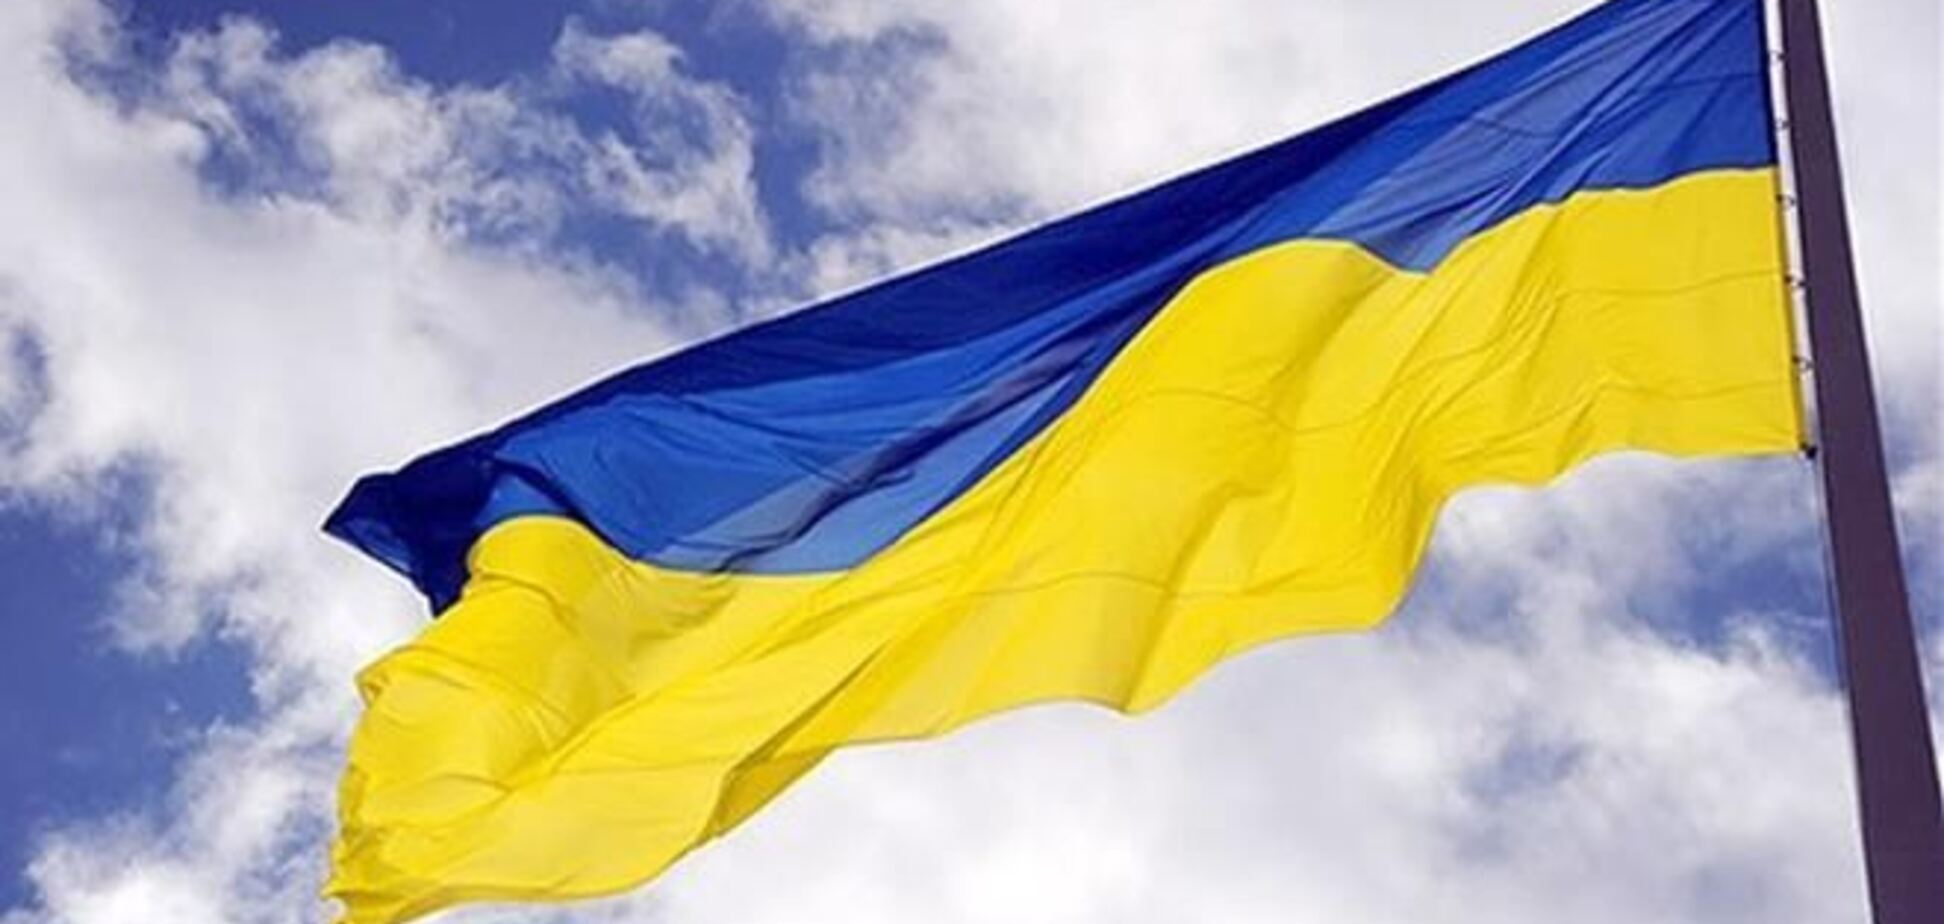 Над автобатом ВМС в Бахчисарае подняли флаг Украины